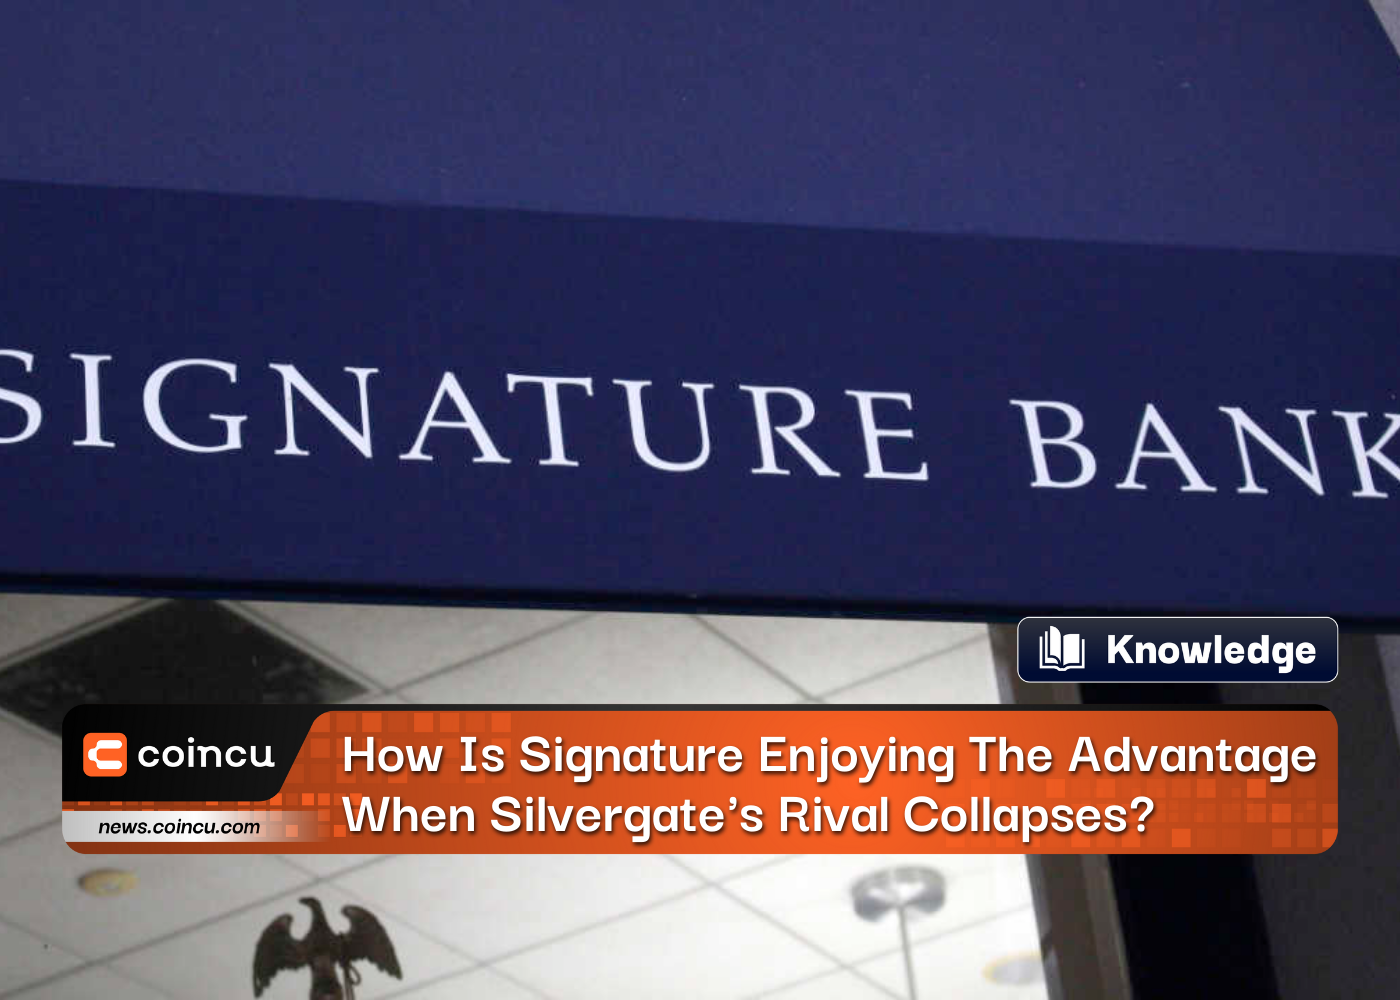 Como o Signature Bank está aproveitando a vantagem quando o rival do Silvergate entra em colapso?